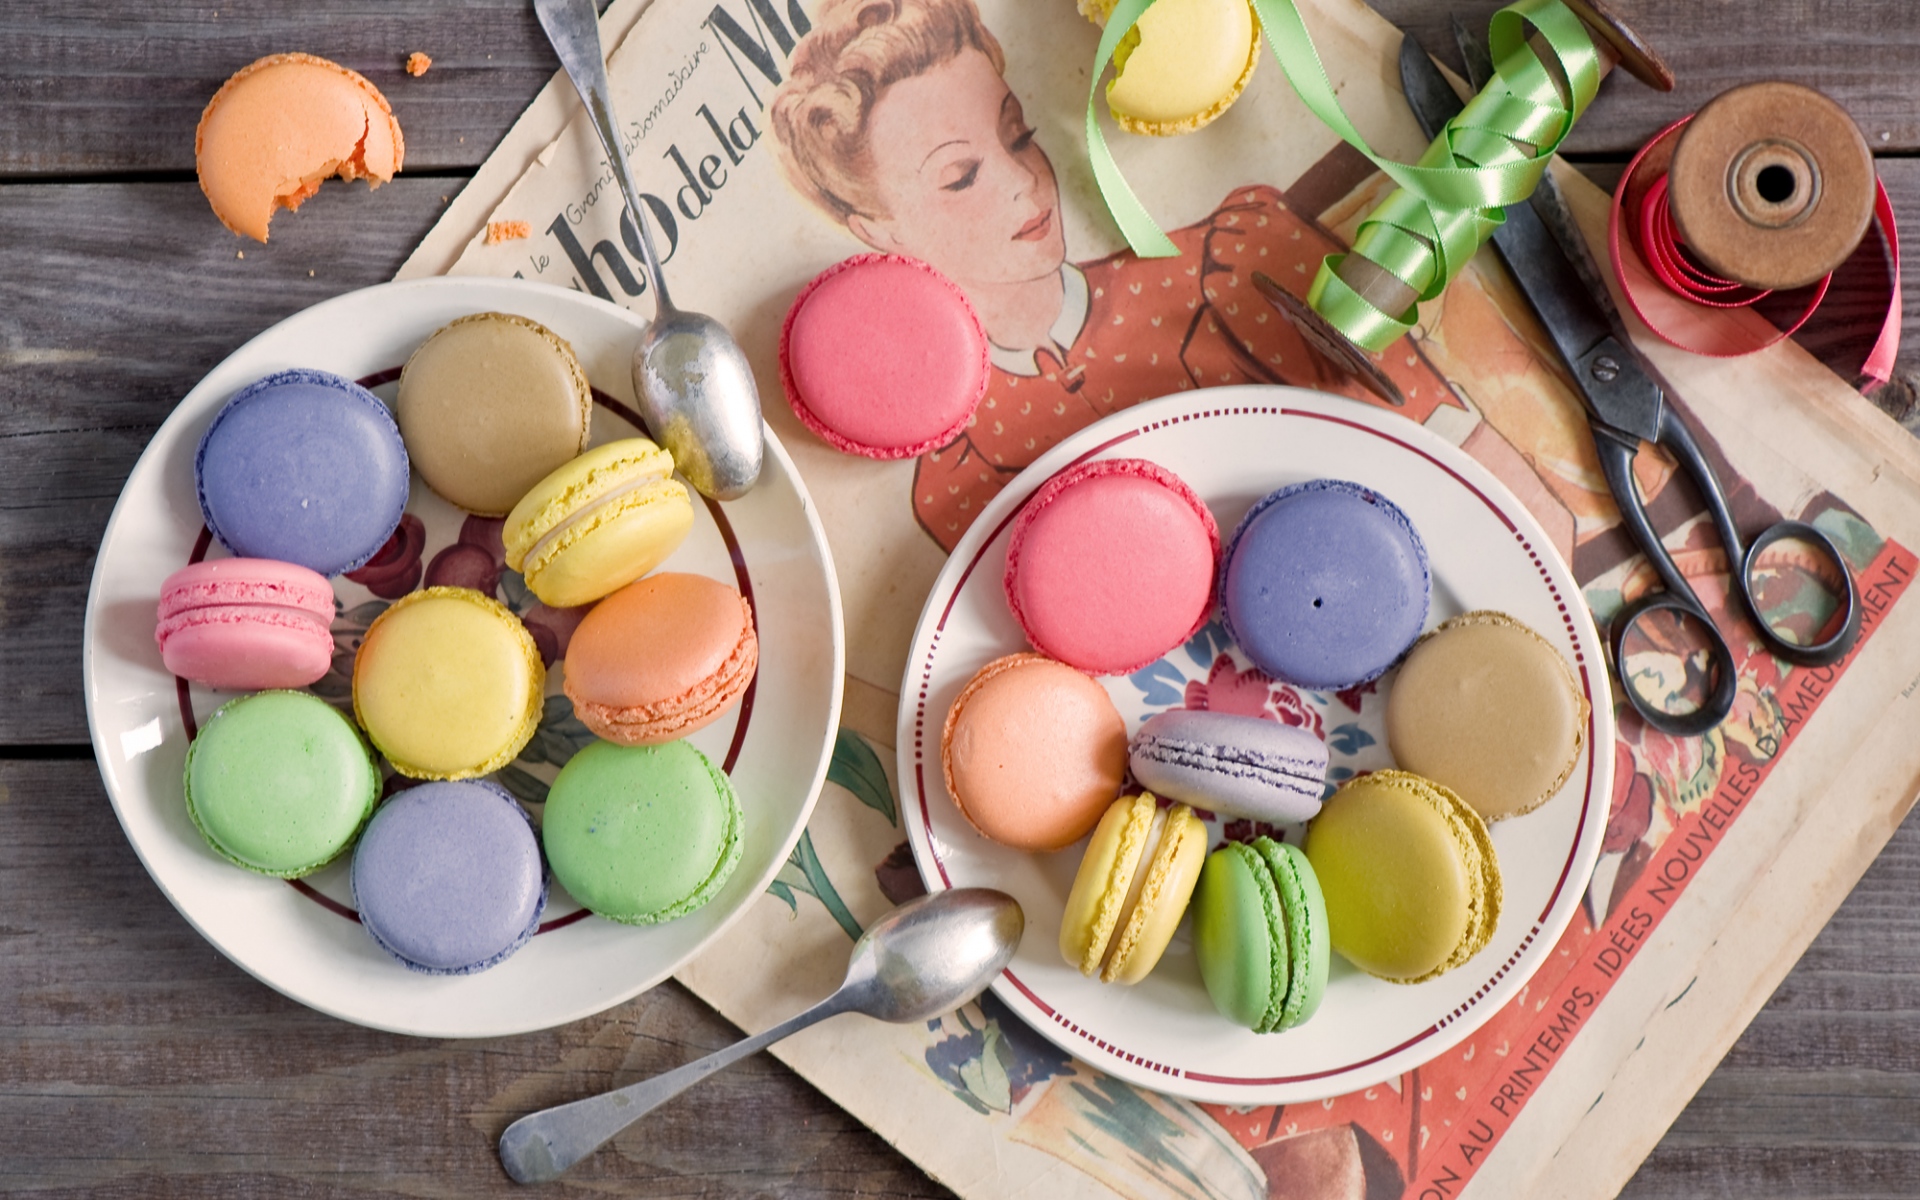 Картинки Макароны, десерты, печенье, красочные фото и обои на рабочий стол